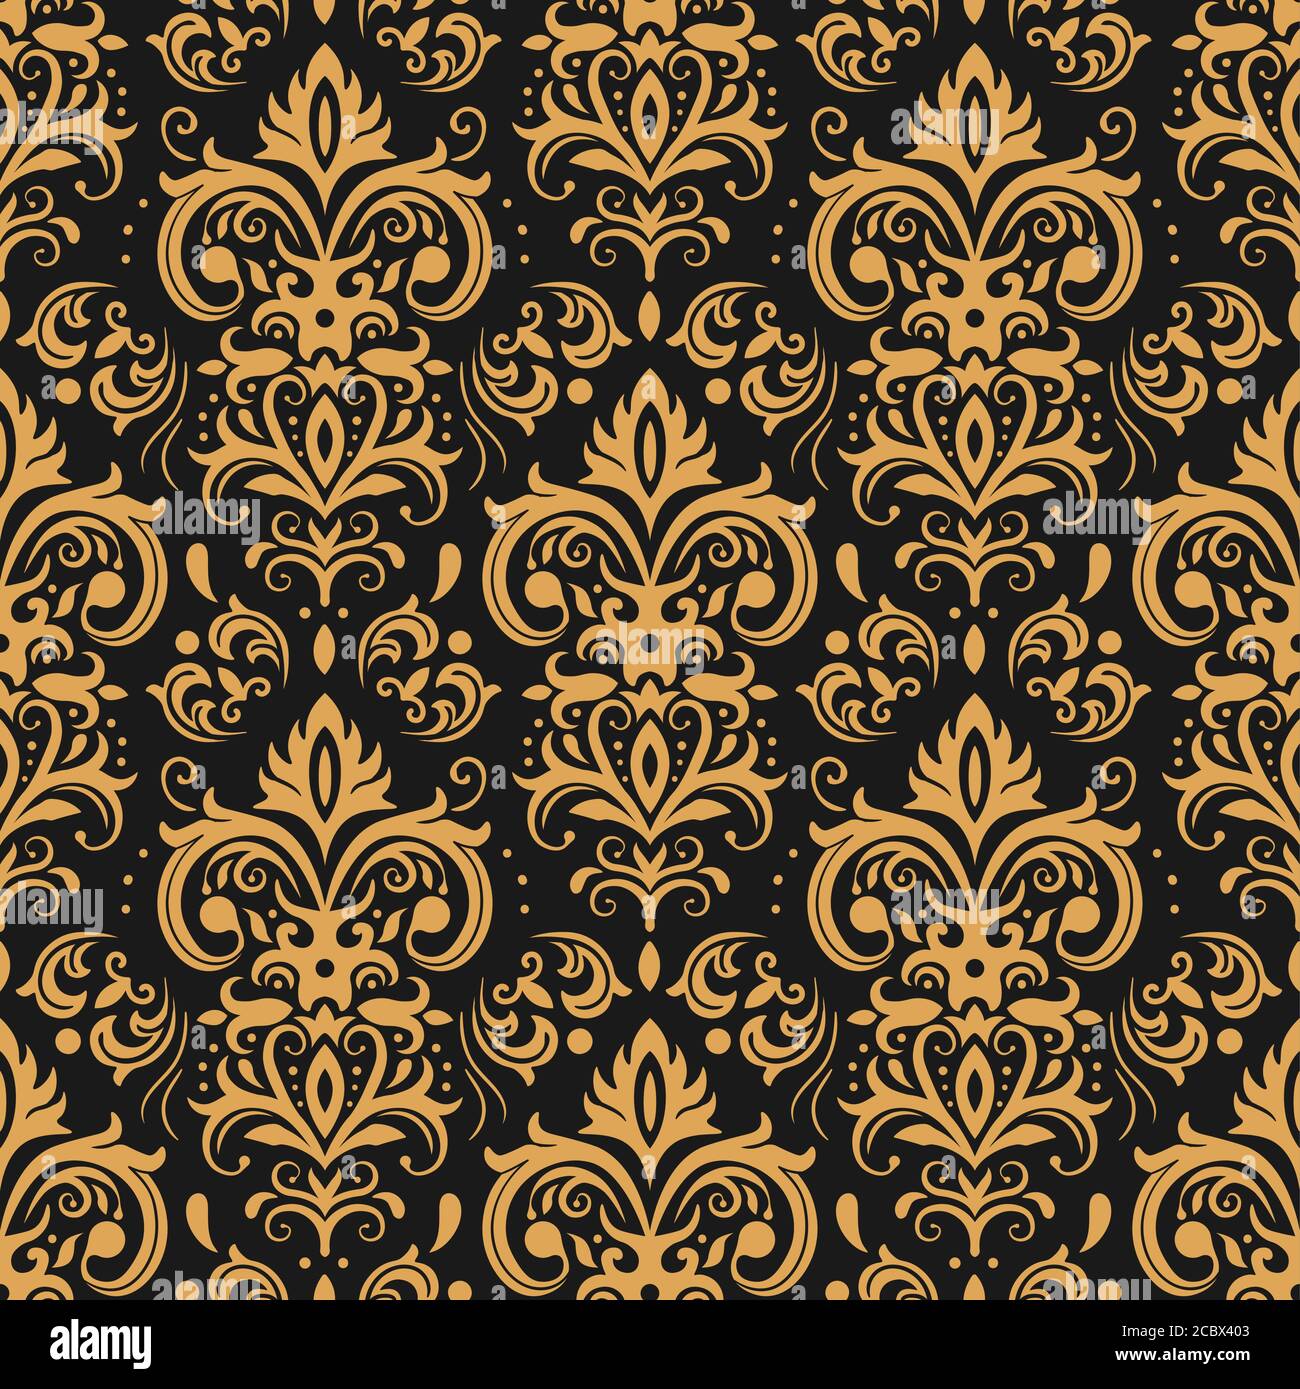 Goldenes Damast-Muster. Vintage Ornament und barocke Elemente zur Dekoration. Elegantes Design für Tapeten Stock Vektor